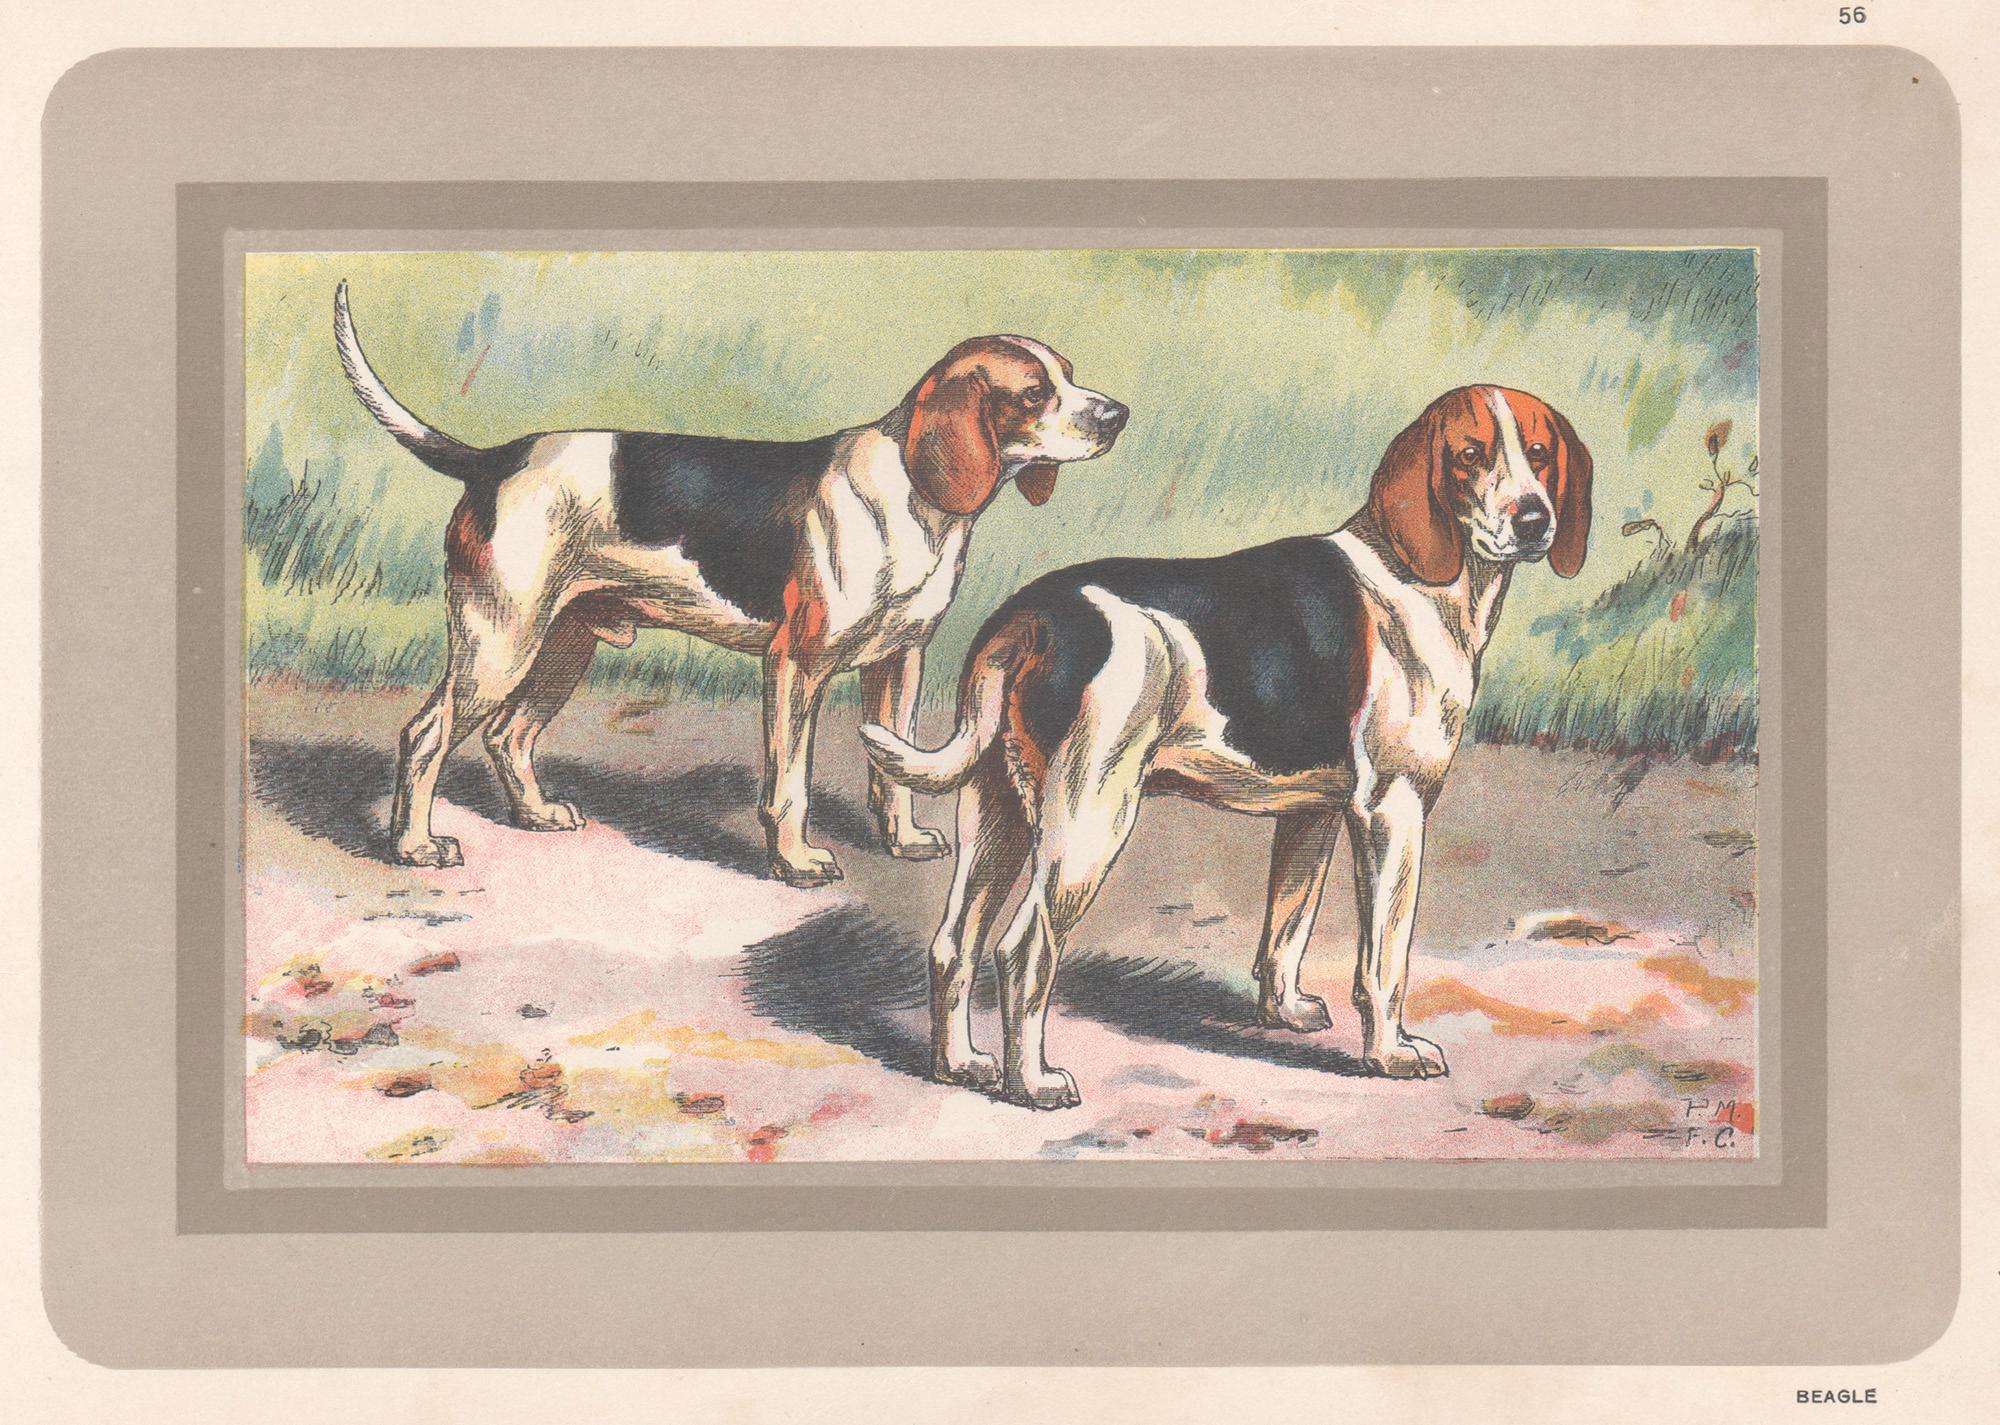 Animal Print F Castellan - Beagle, impression chromolithographie d'un chien de chasse français, 1931